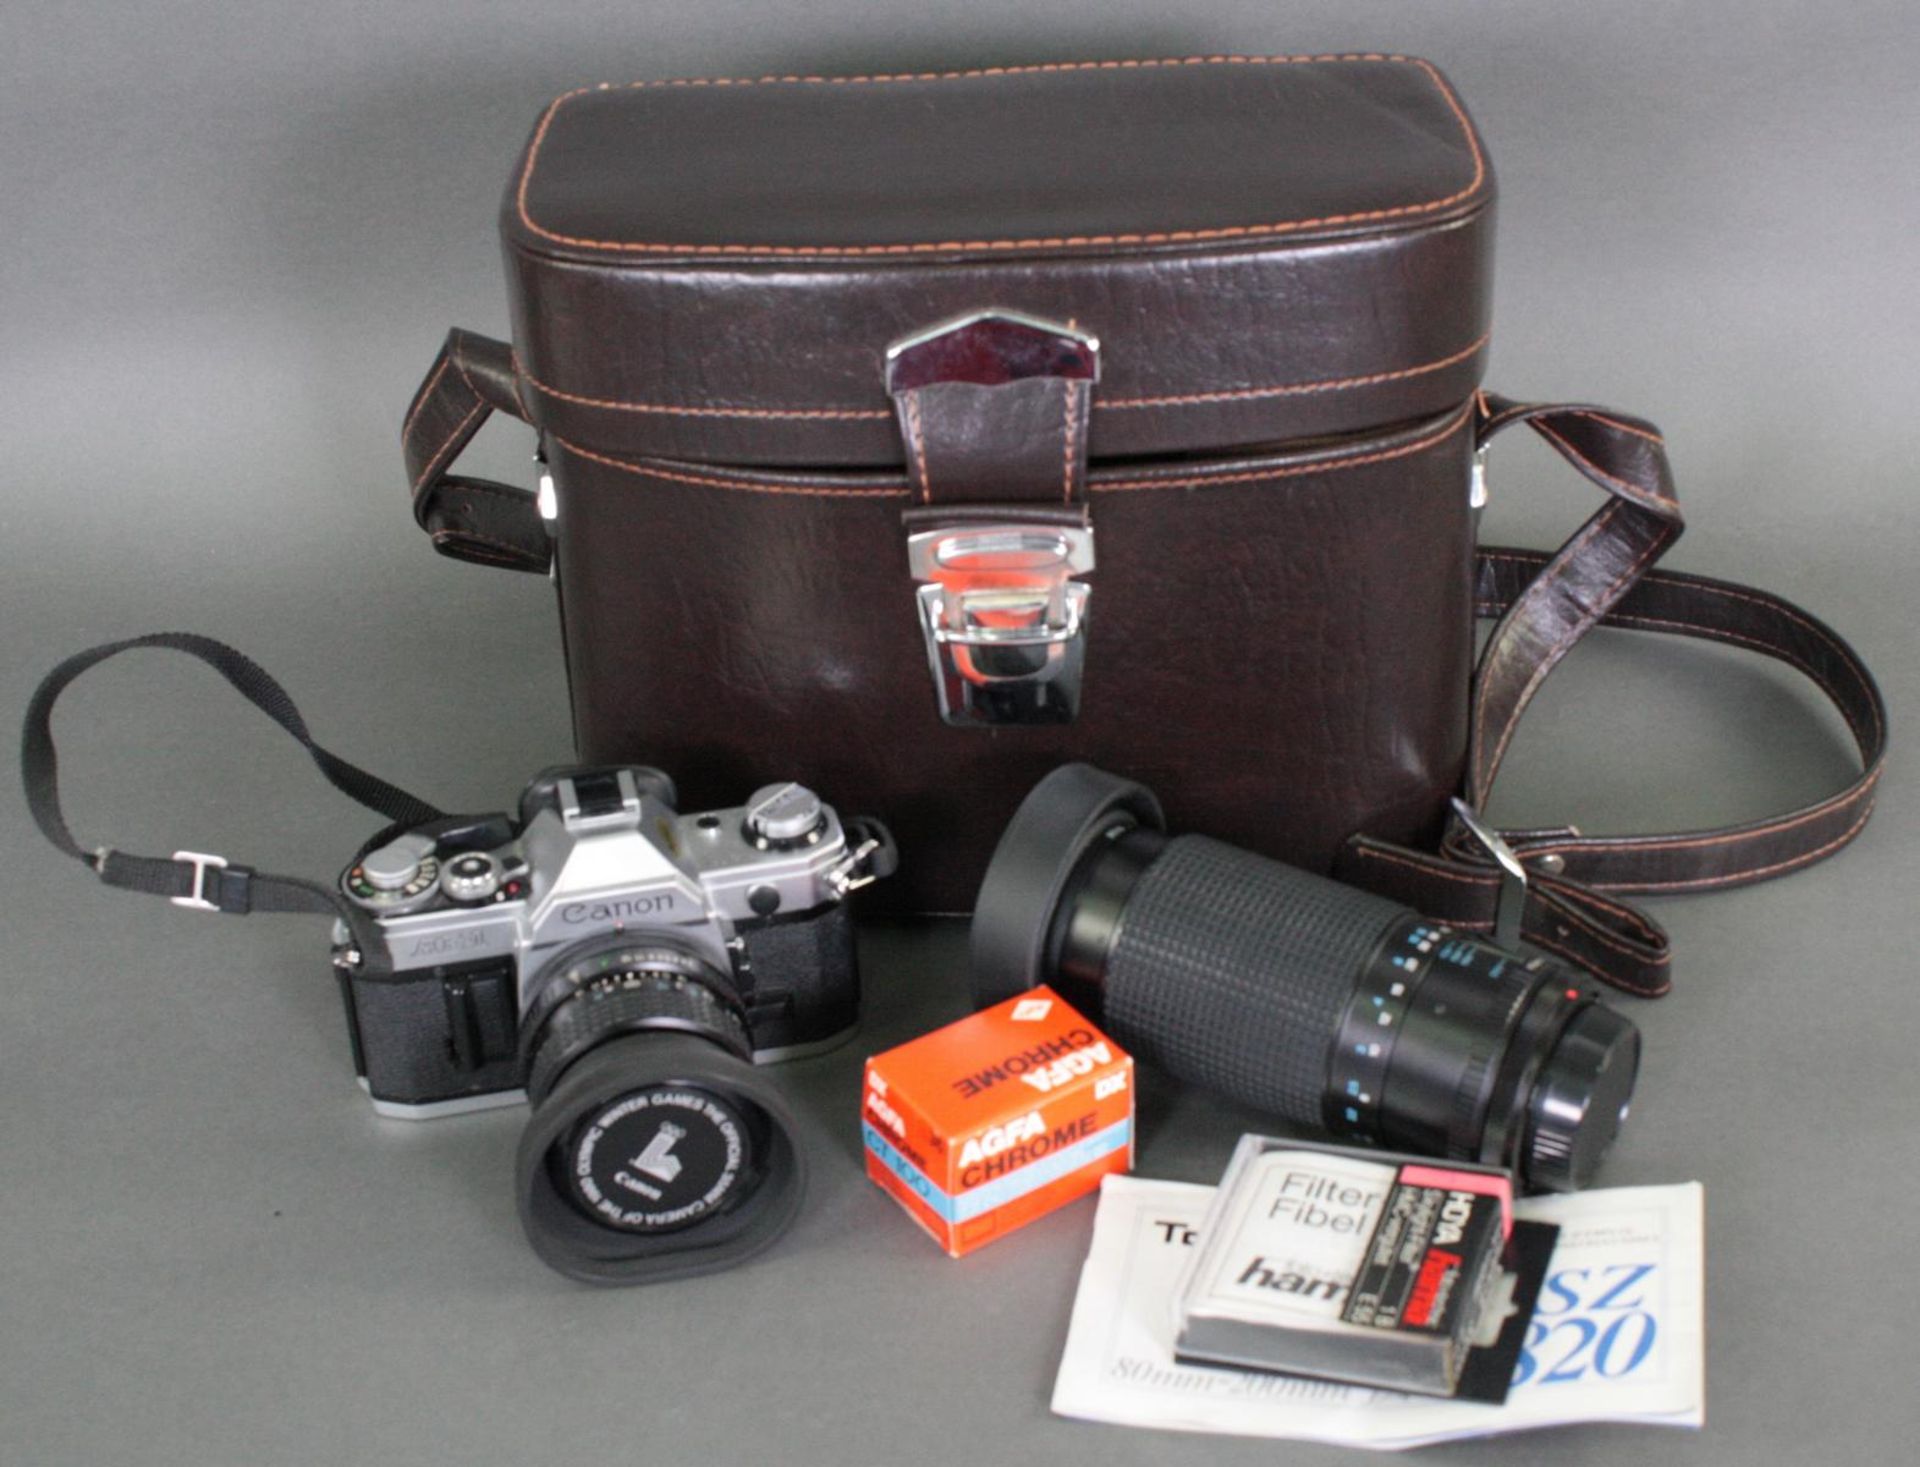 Canon AE-1 Kamera mit Tokina 28 mm Objektiv, Kameratasche und Zubehör